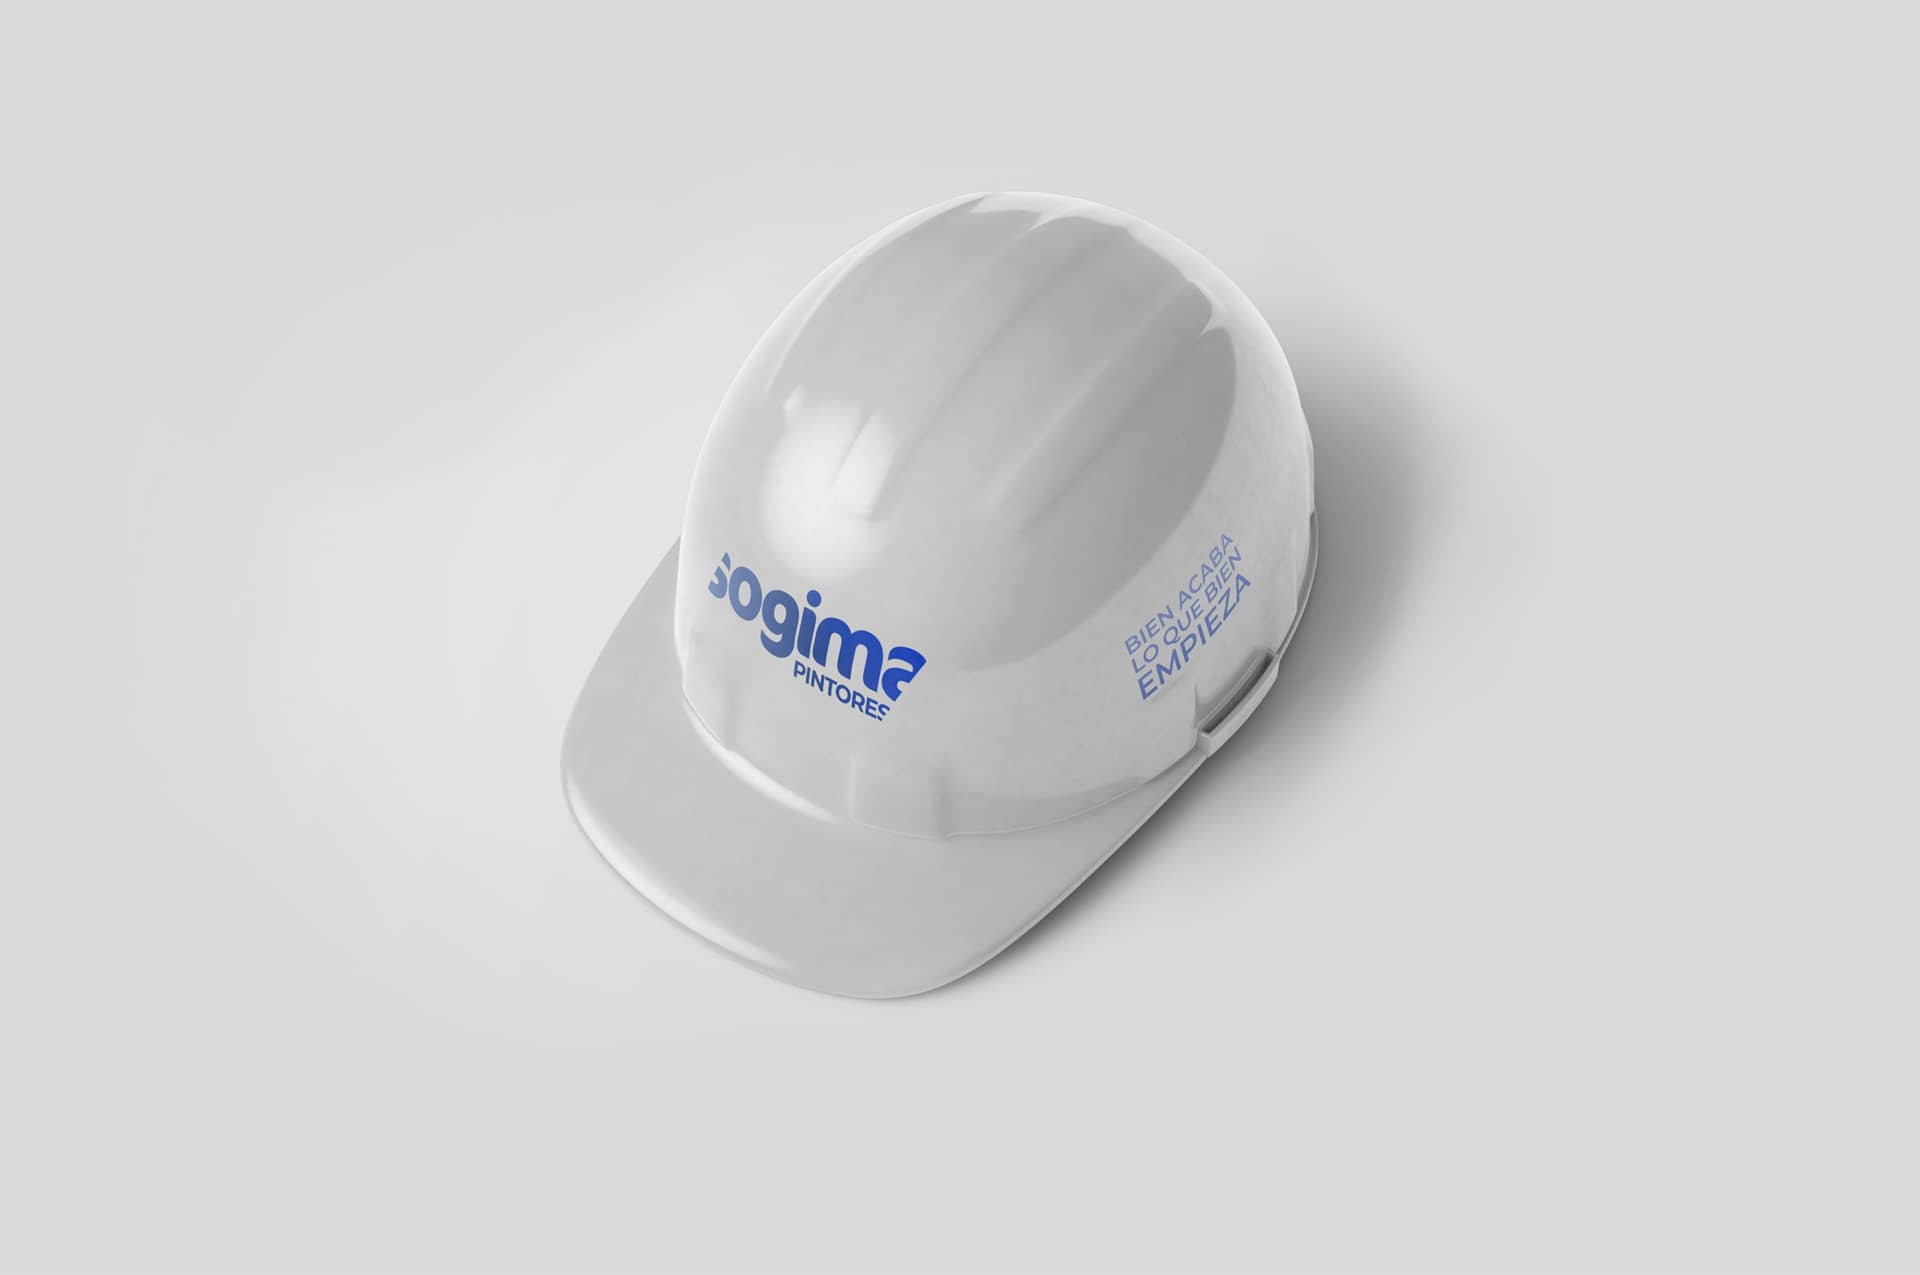 Casco de trabajo blanco de Sogima branding por The Acctitude diseño web